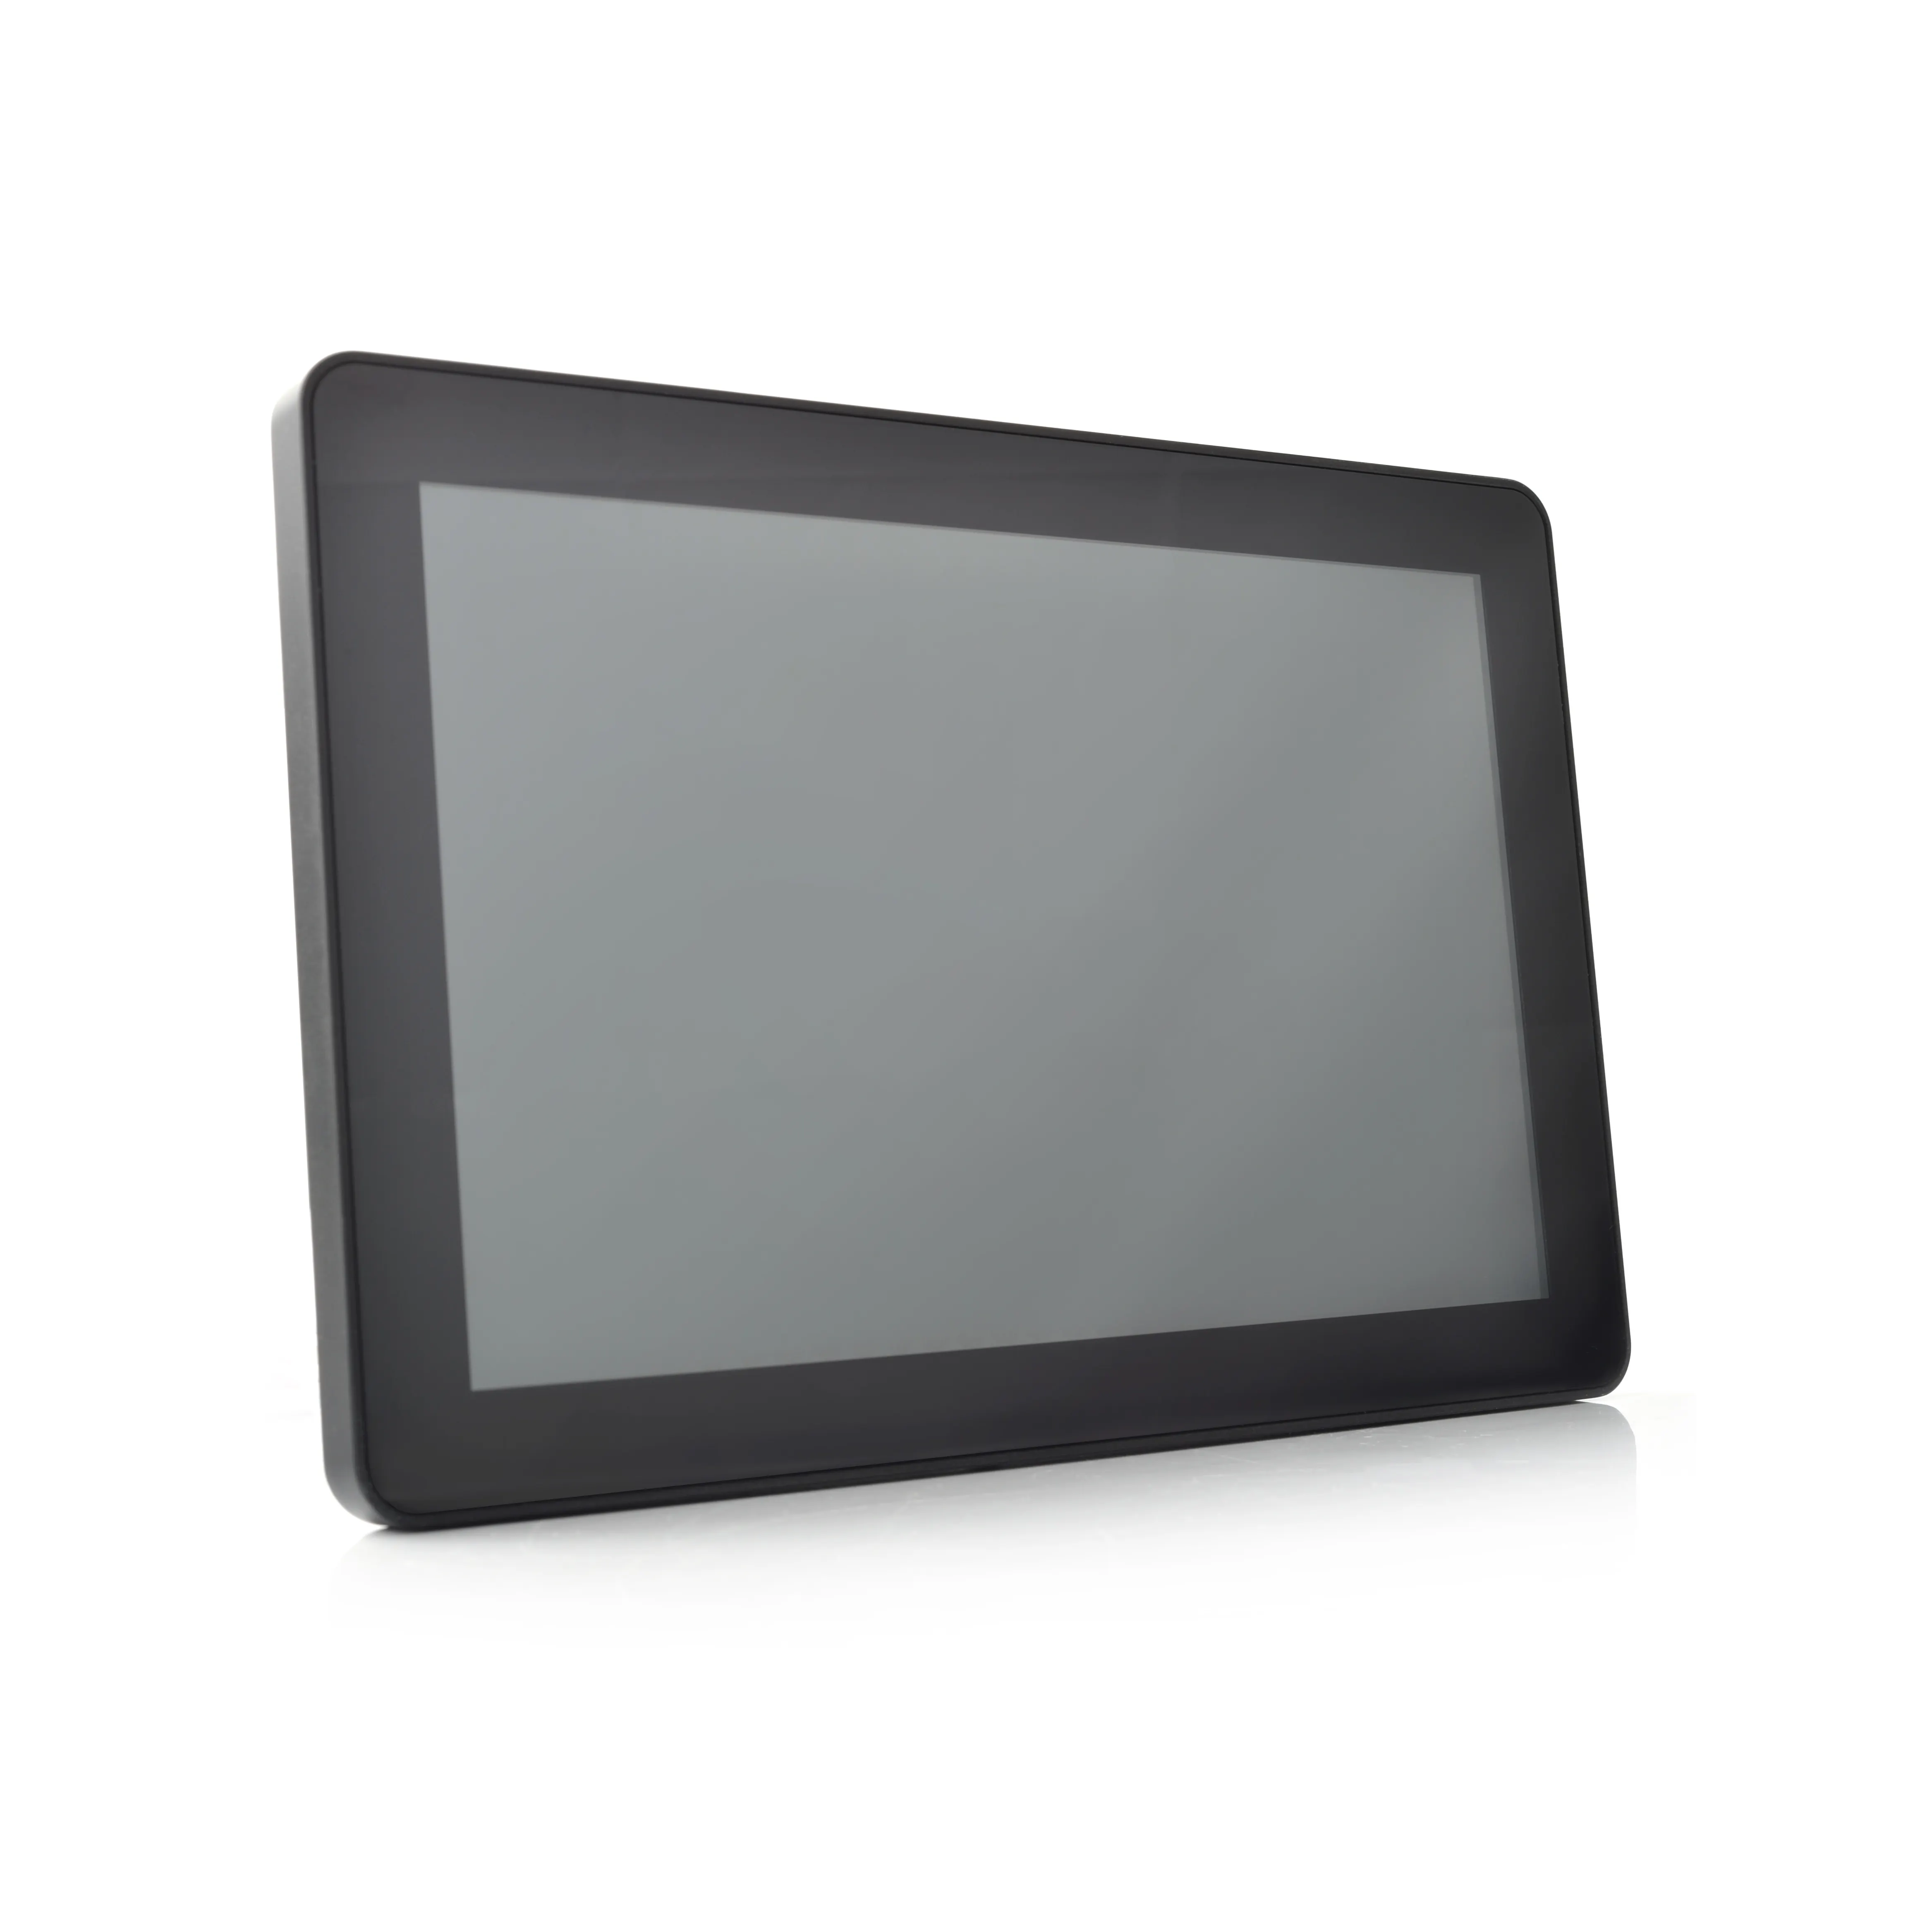 Monitor da pannello Touch Screen capacitivo da 10.1 pollici Touchscreen Display Android Monitor LCD 16:10 rapporto di aspetto 1280*800 Wide Black